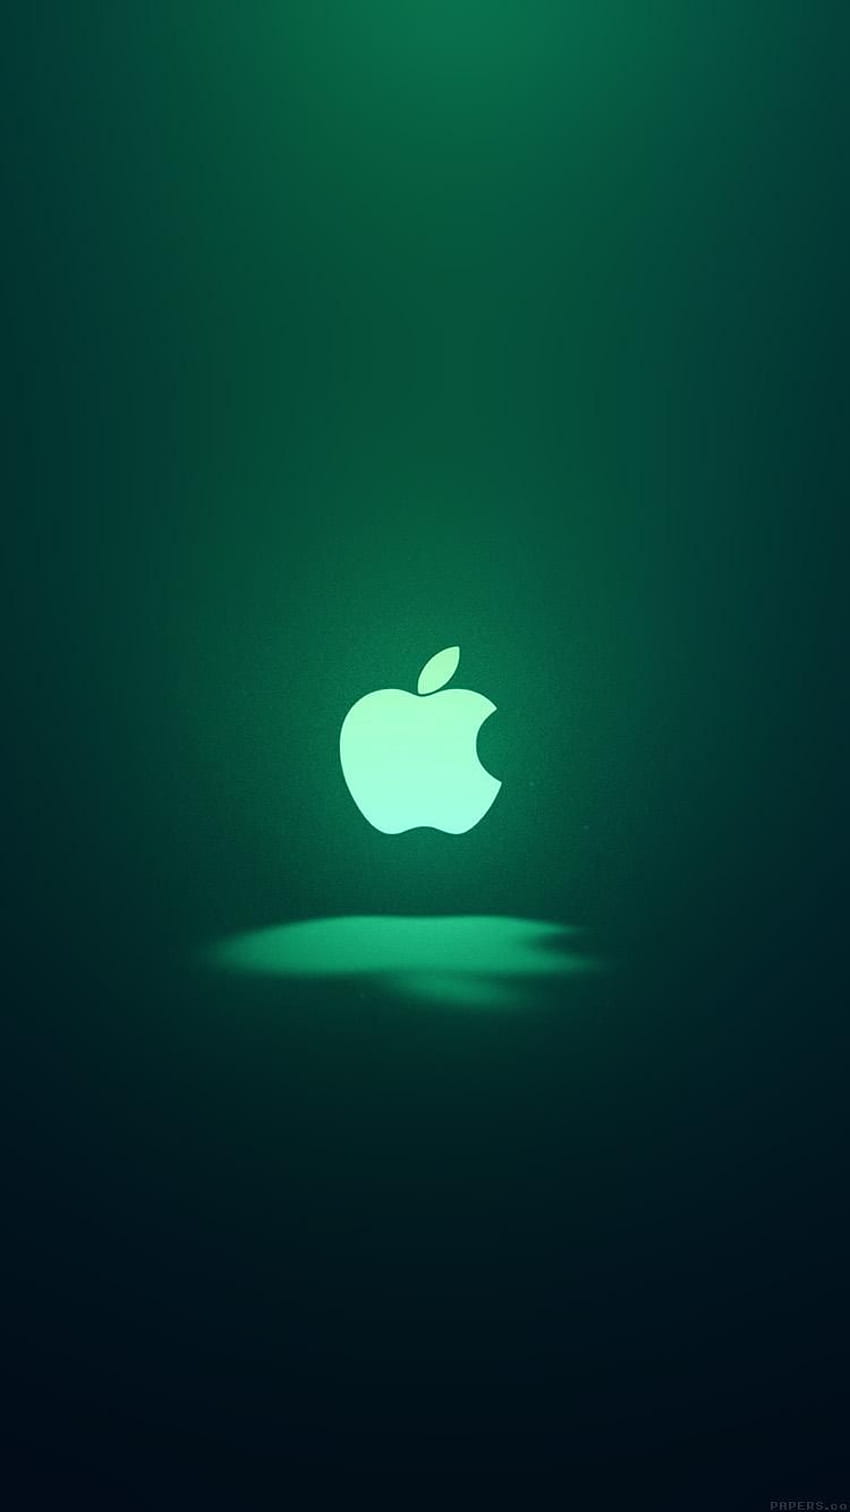 Apple'tite!、グリーン iPhone 6 HD電話の壁紙